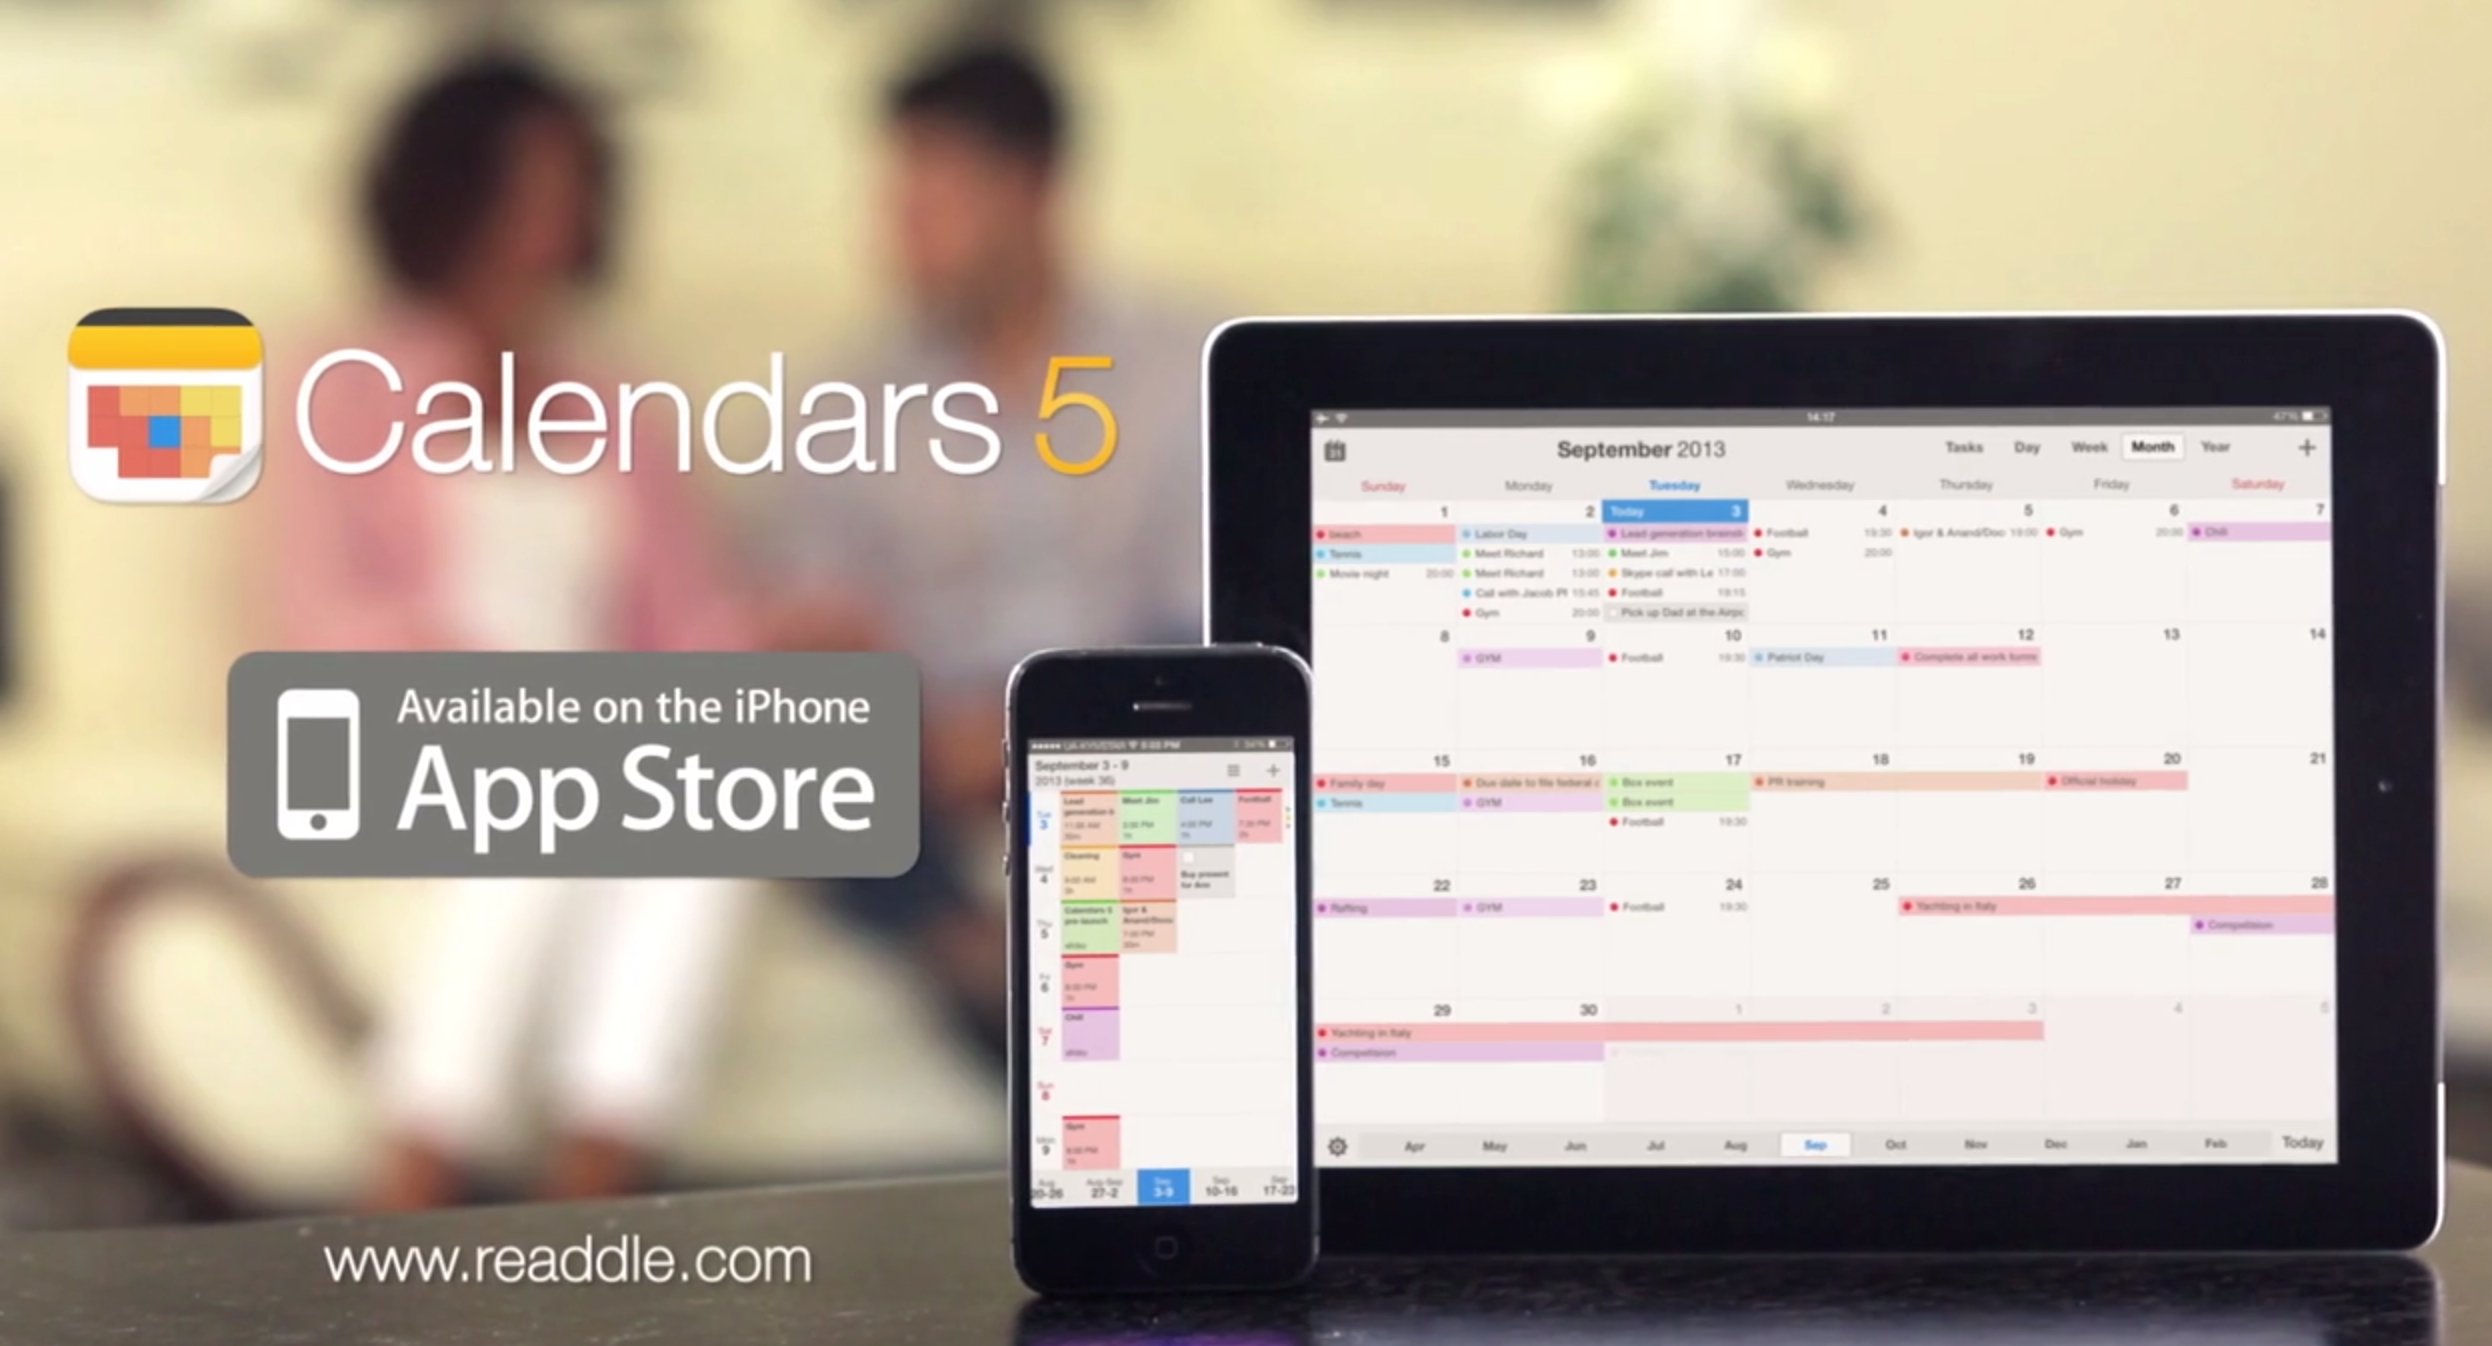 Calendars 5 kostenlos intelligente iPhone Kalender App mit Google Sync!